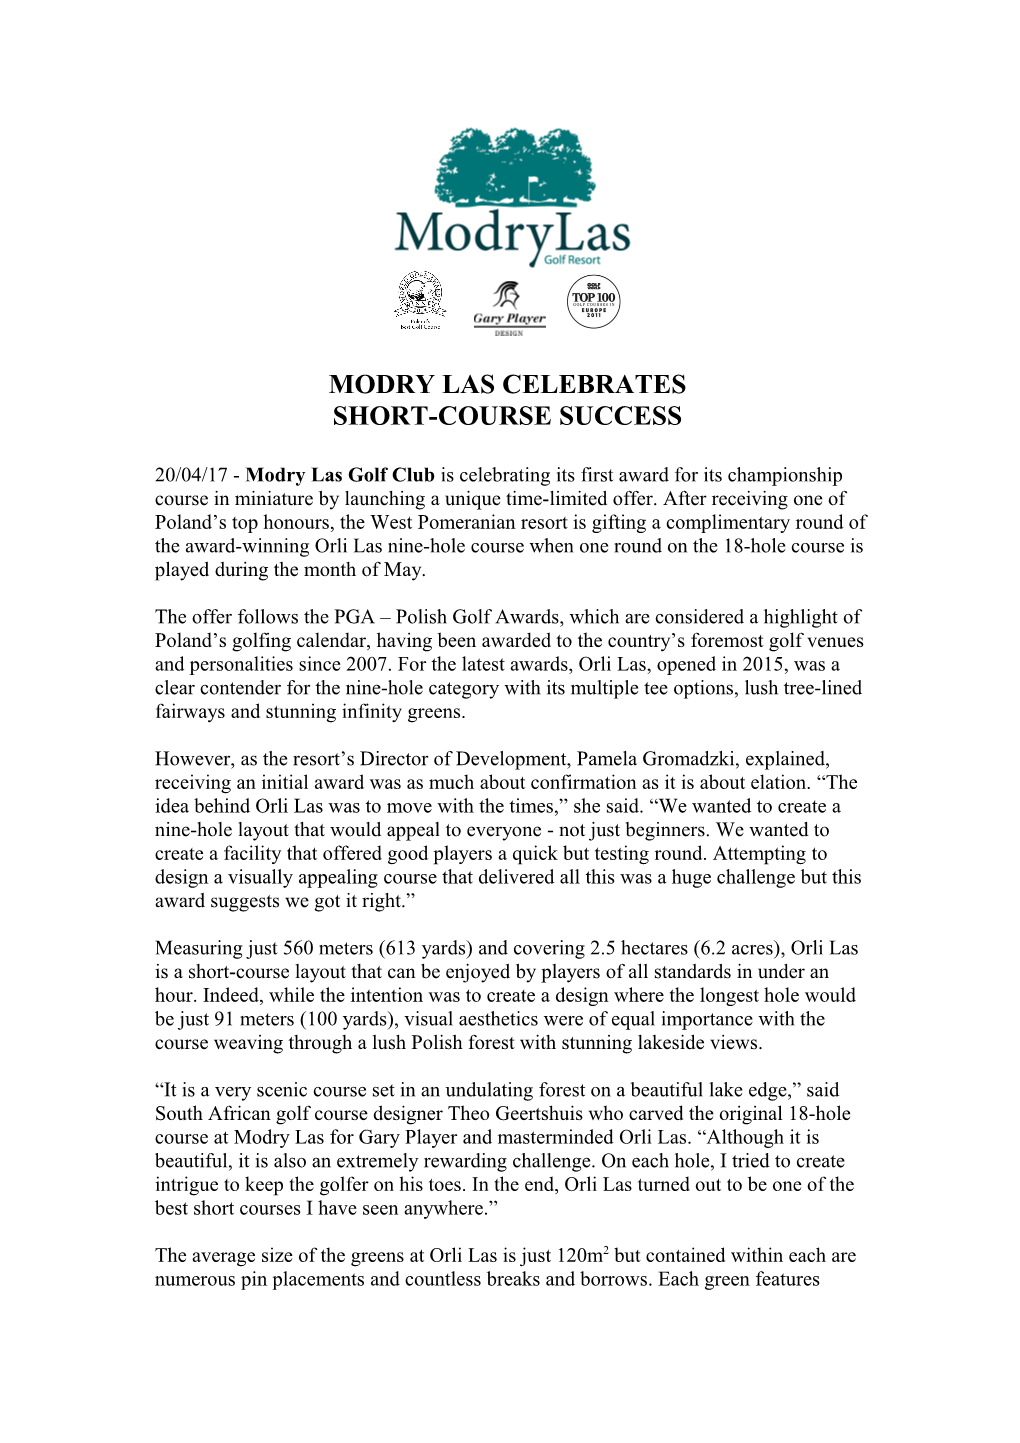 Modry Las Celebrates Short-Course Success